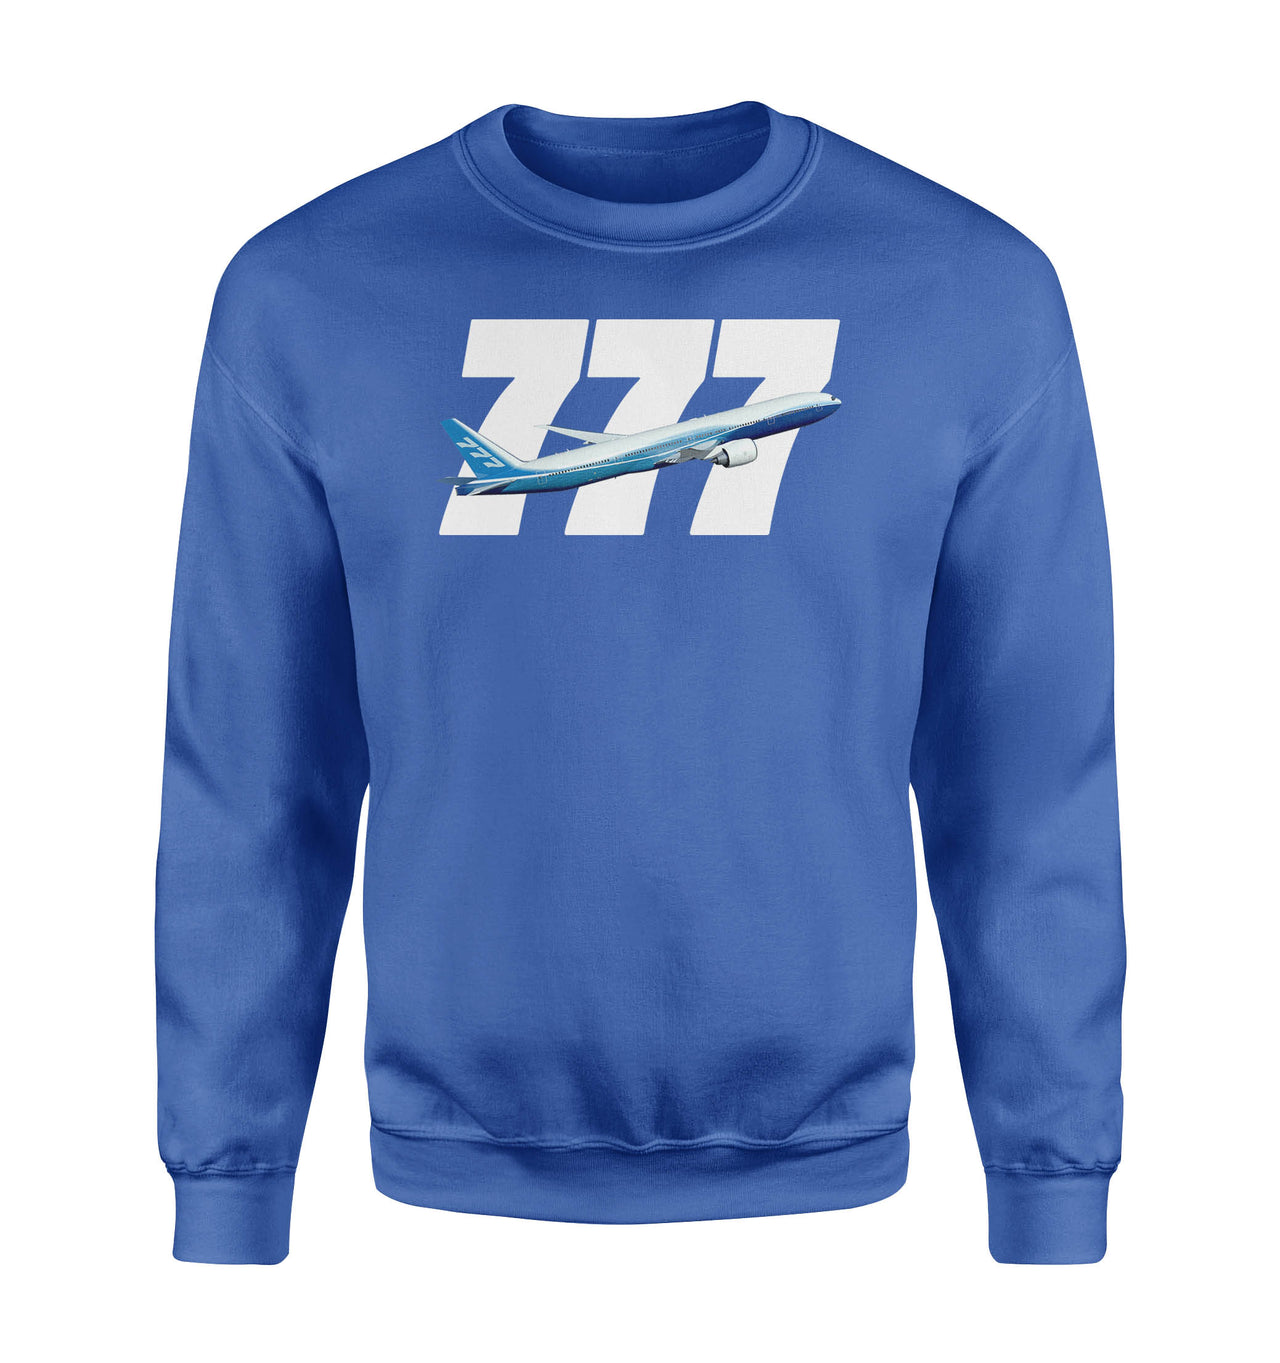 Super Boeing 777 Designed Sweatshirts